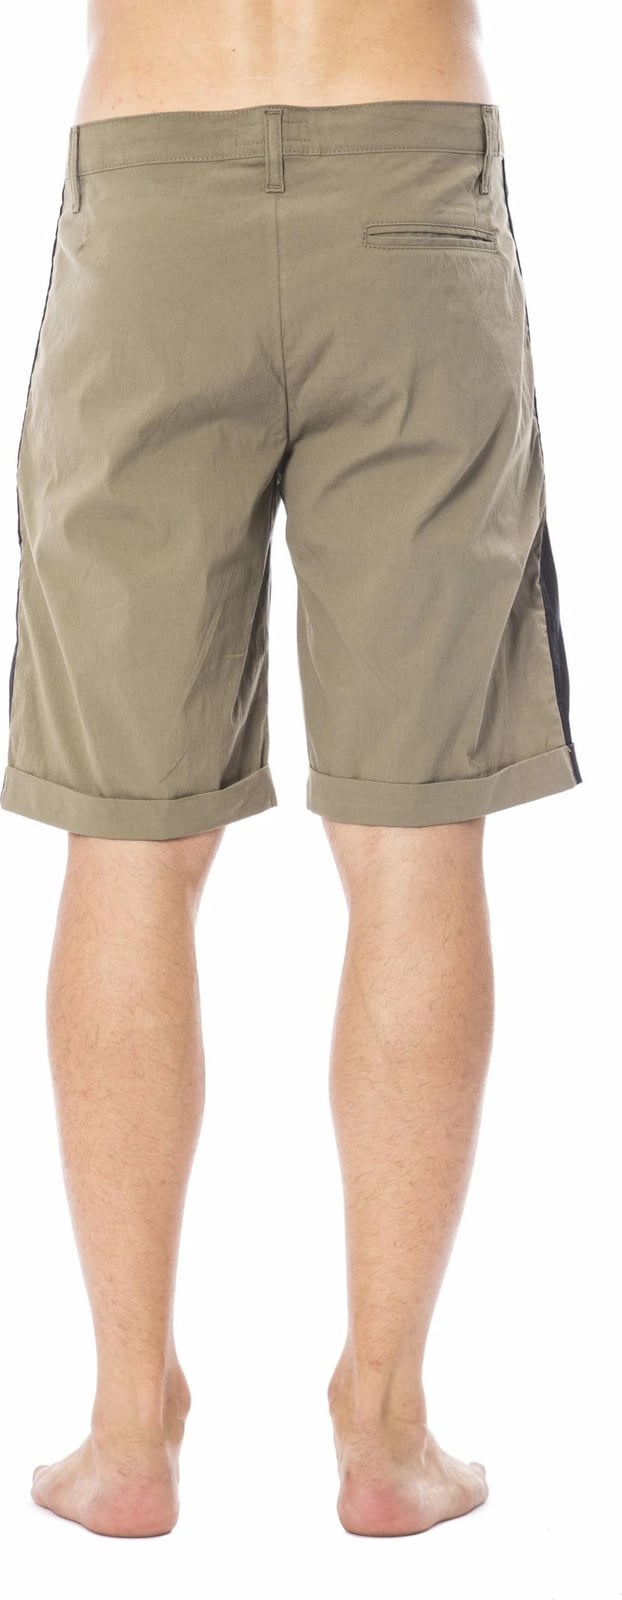 Pantallona të shkurtra për meshkuj Verri